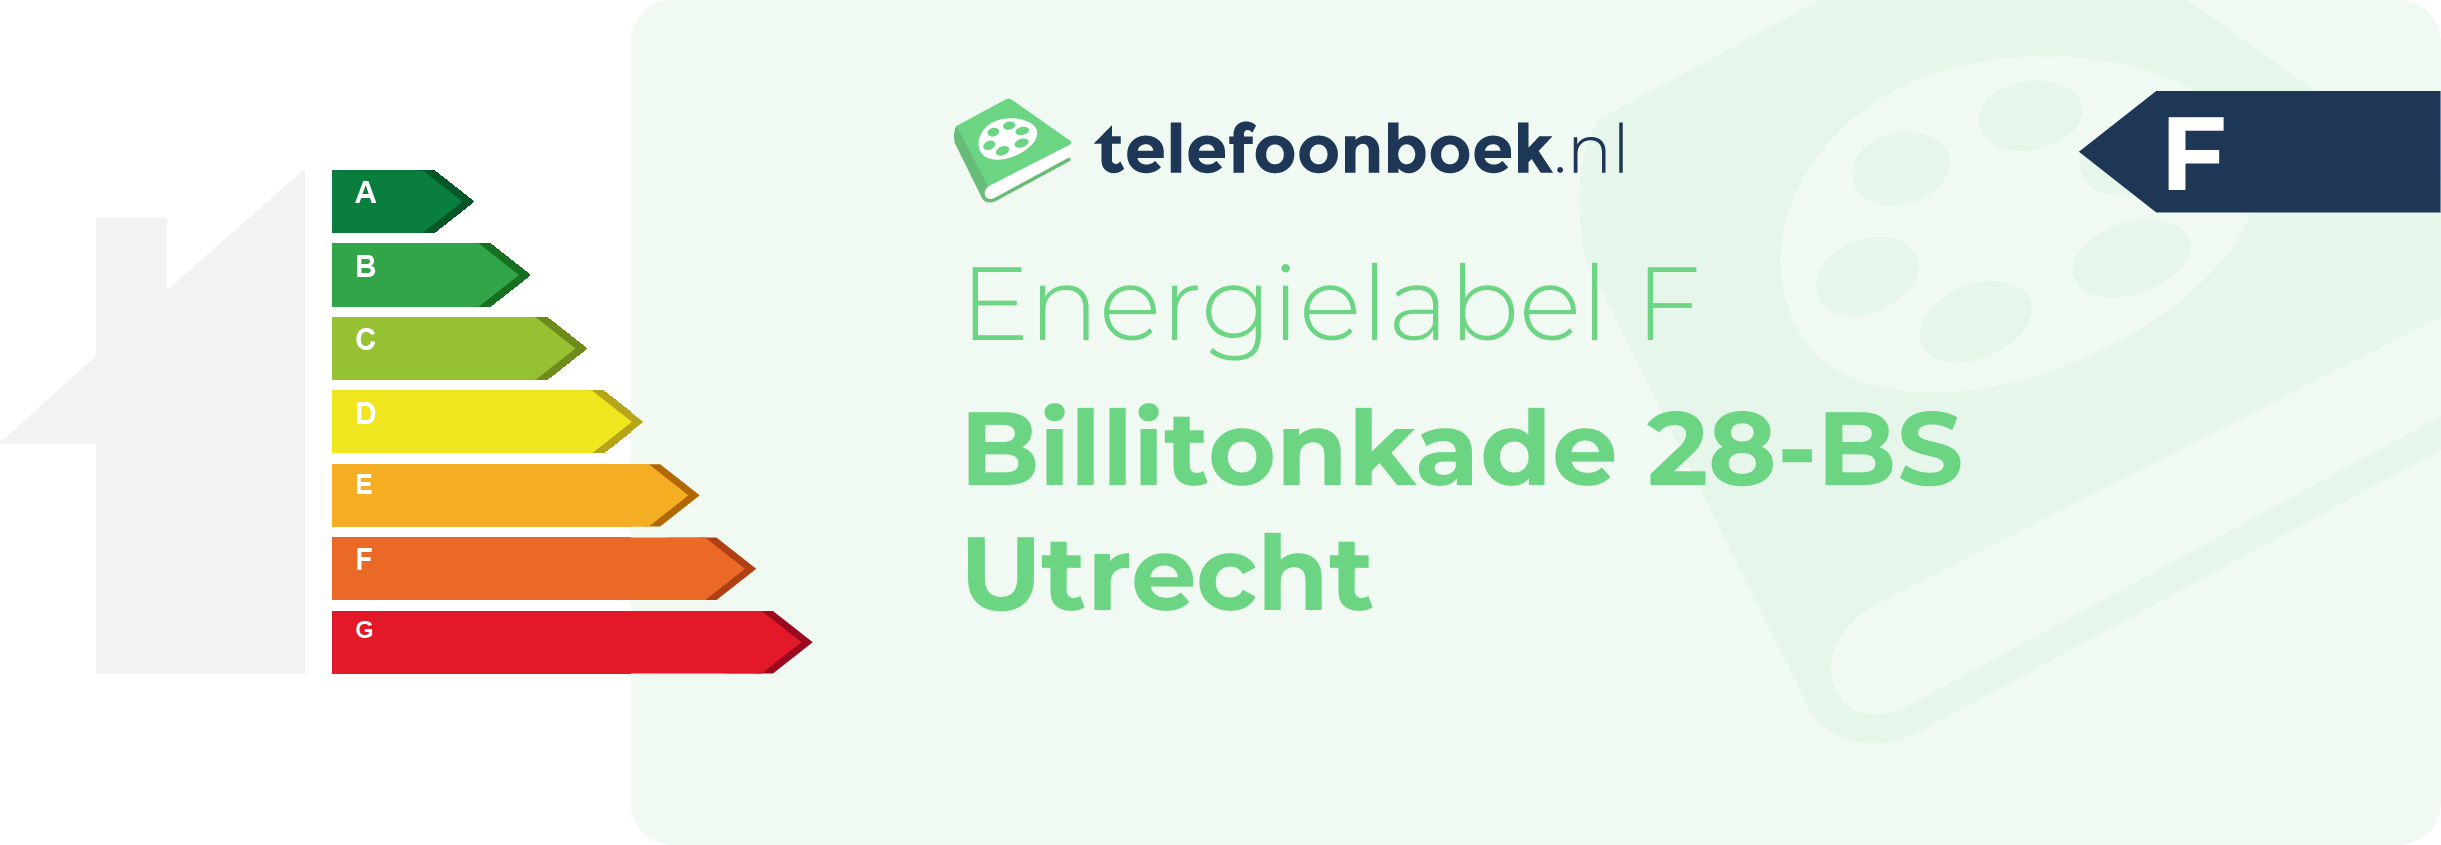 Energielabel Billitonkade 28-BS Utrecht